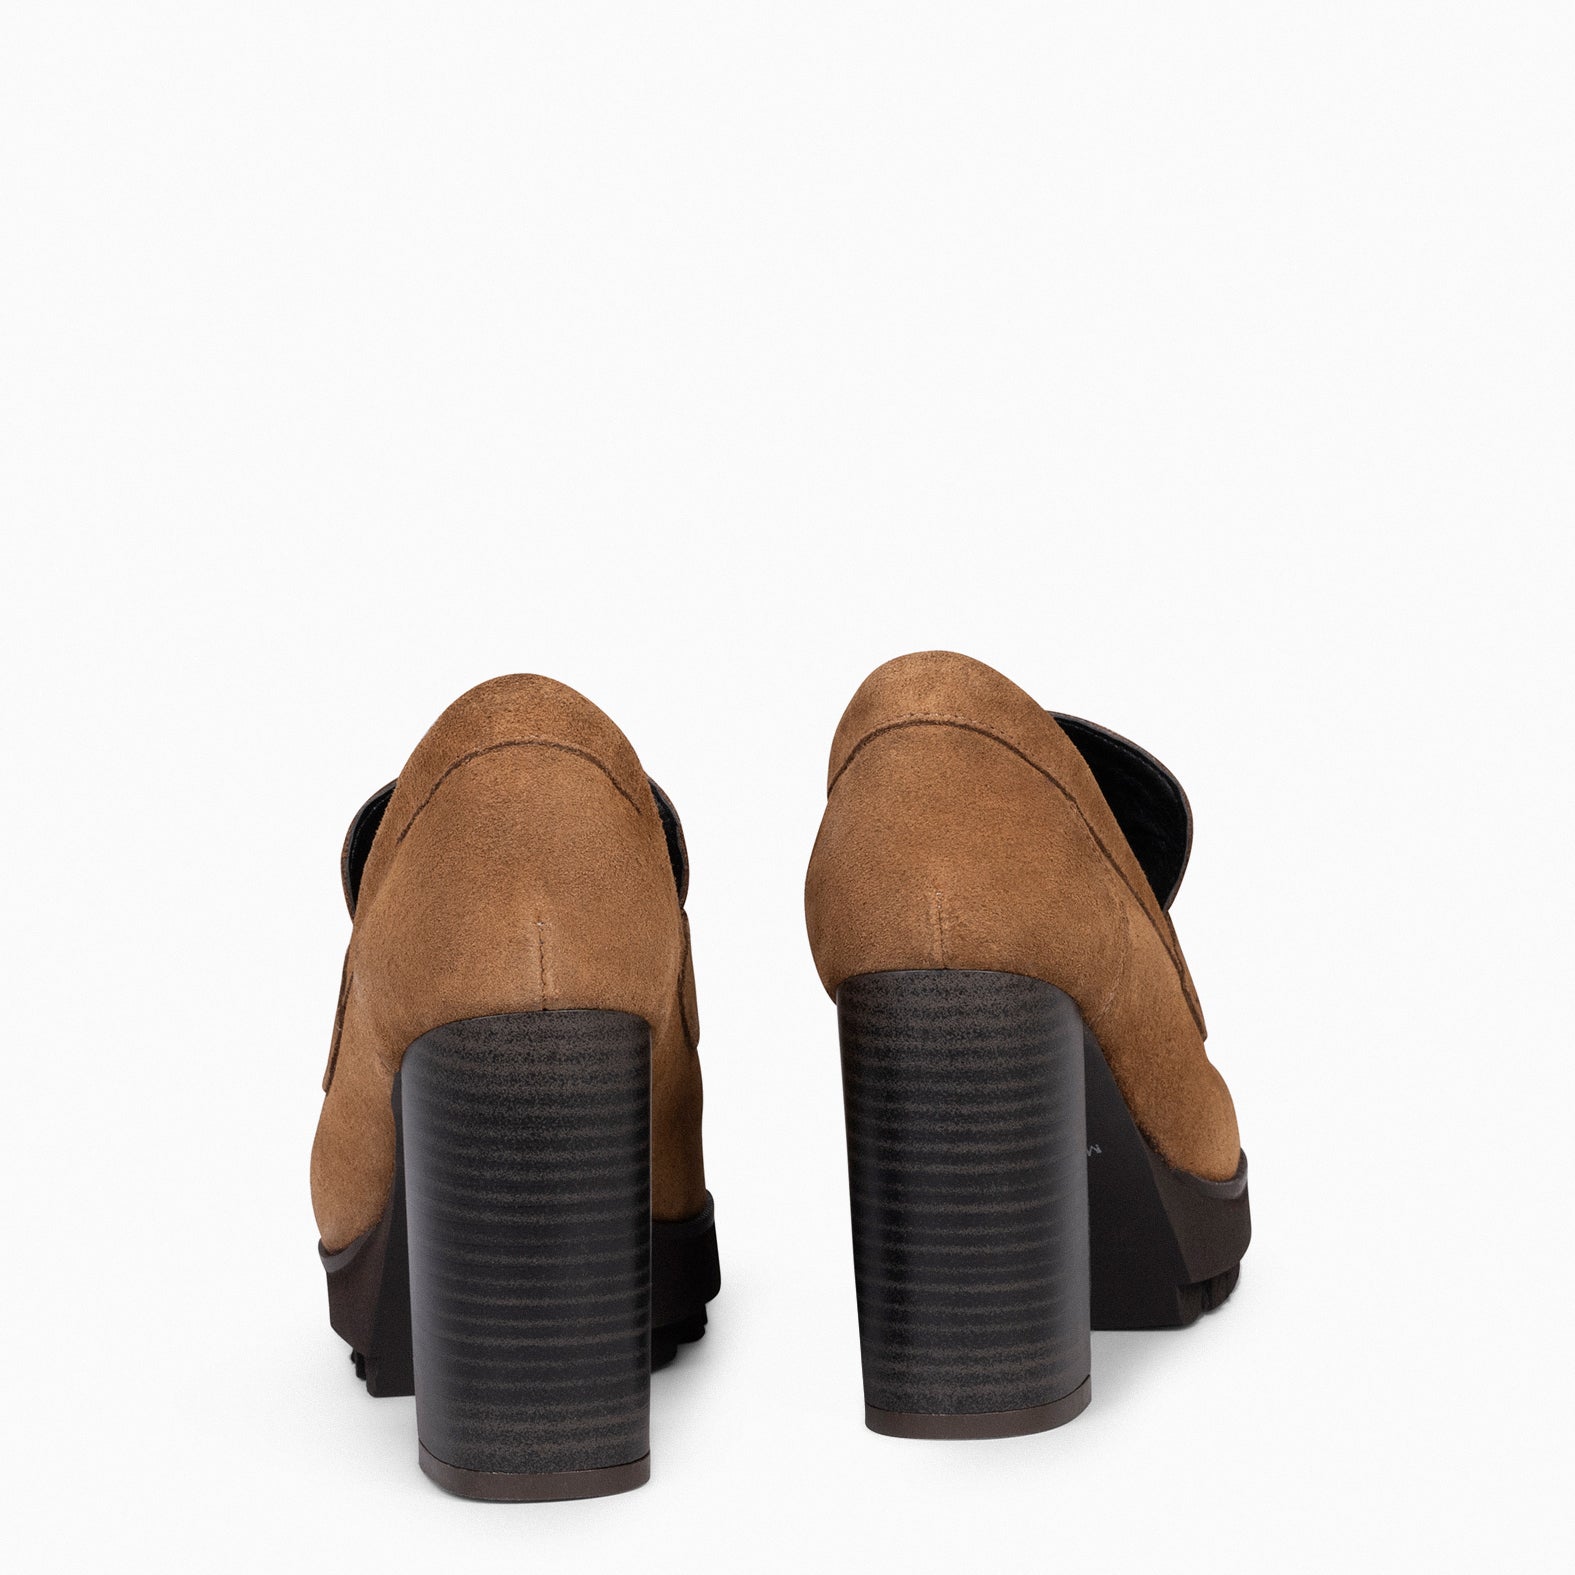 TREND – CAMEL high heel moccasins with platform 